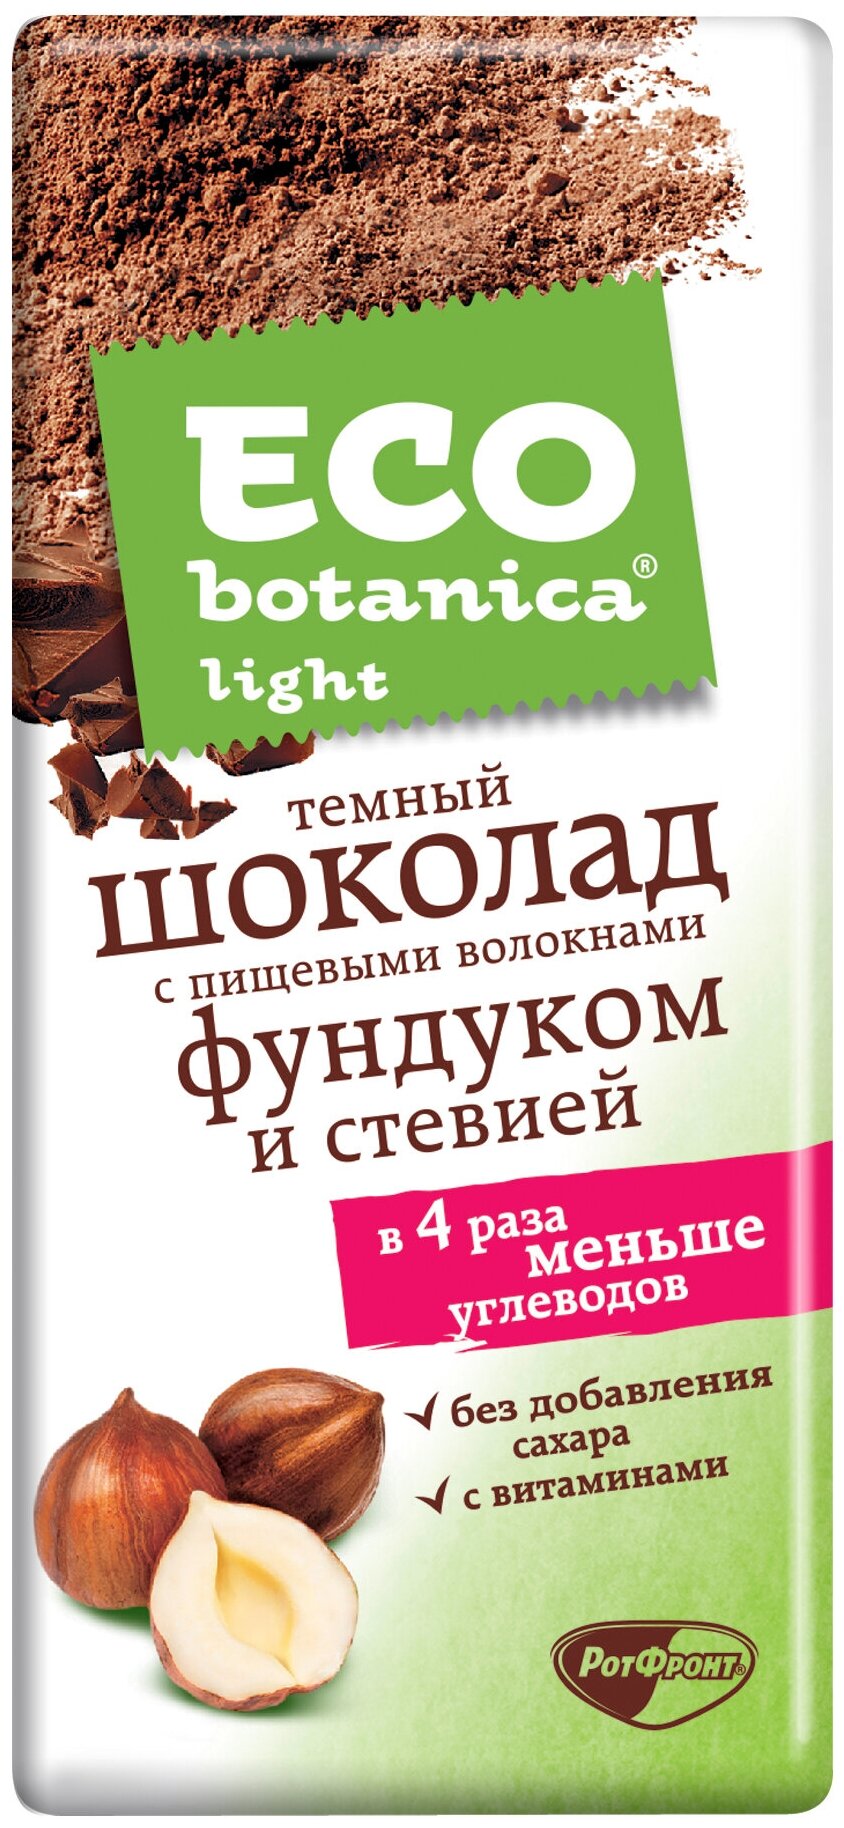 Шоколад Eco botanica Light темный с фундуком и стевией